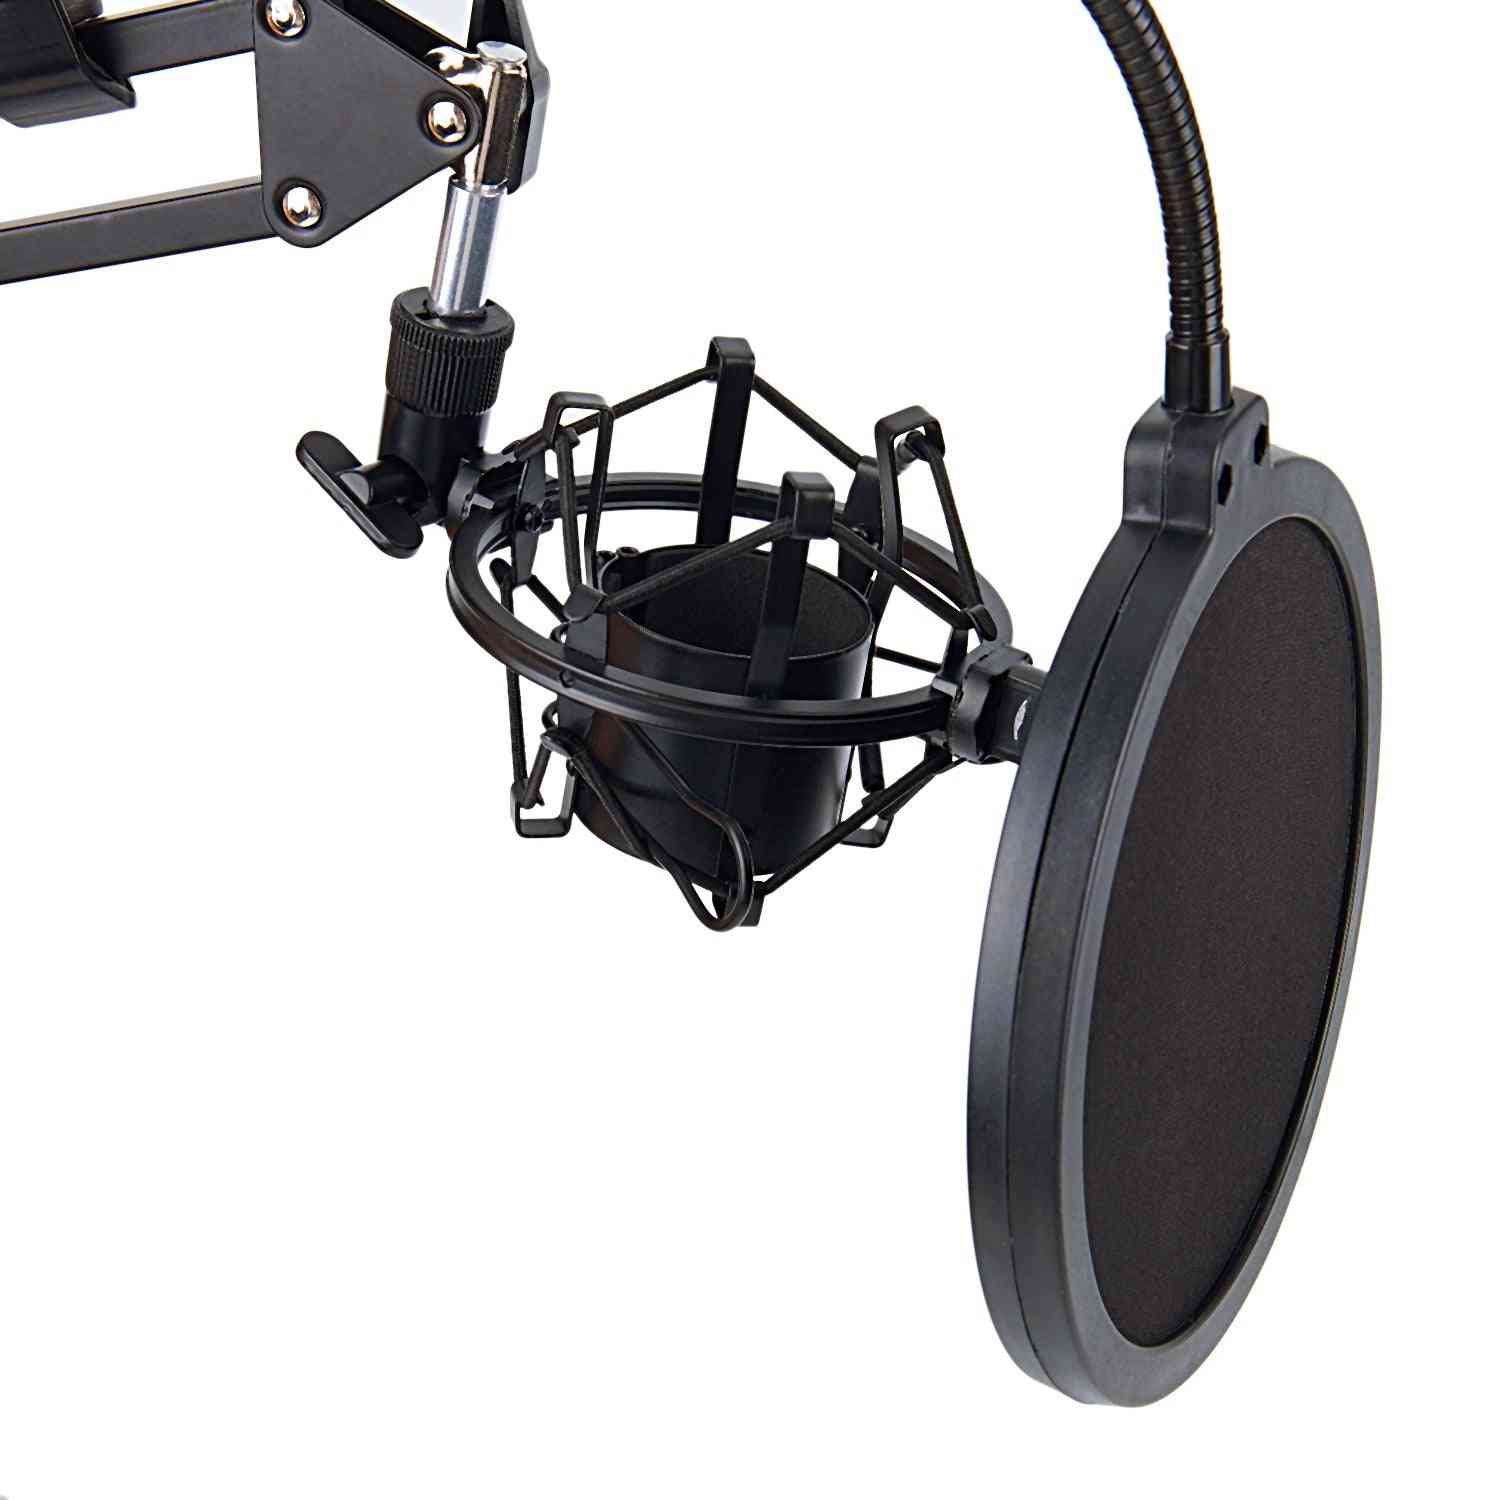 Mikrofon z ramieniem nożycowym i zaciskiem do montażu na stole z osłoną filtra i metalowym zestawem montażowym - czarny